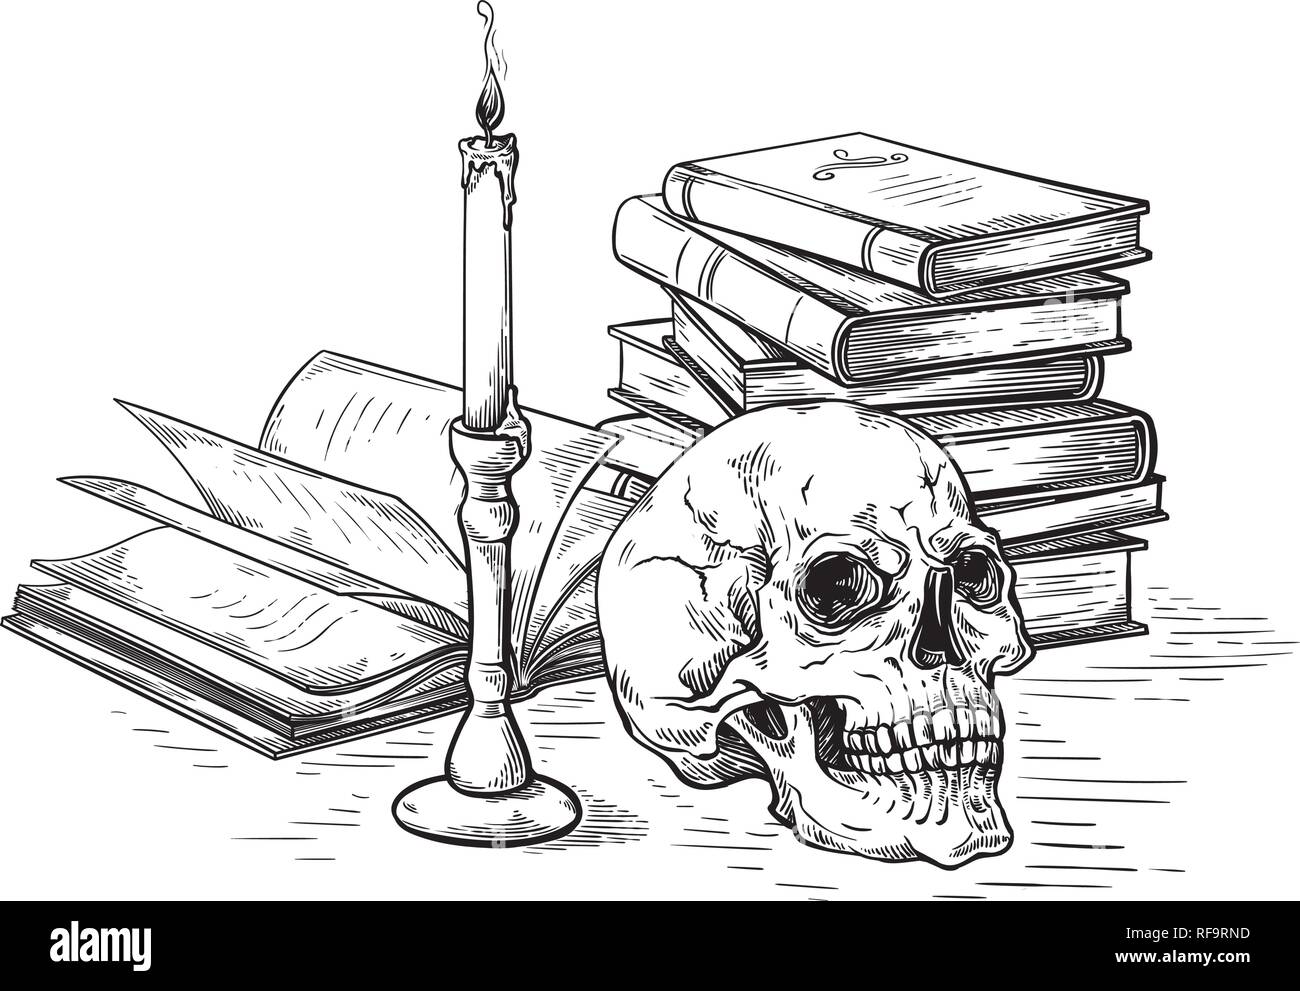 Croquis faits main concept mort crâne humain sur de vieux livres près de bougie sur fond sombre vector illustration Illustration de Vecteur